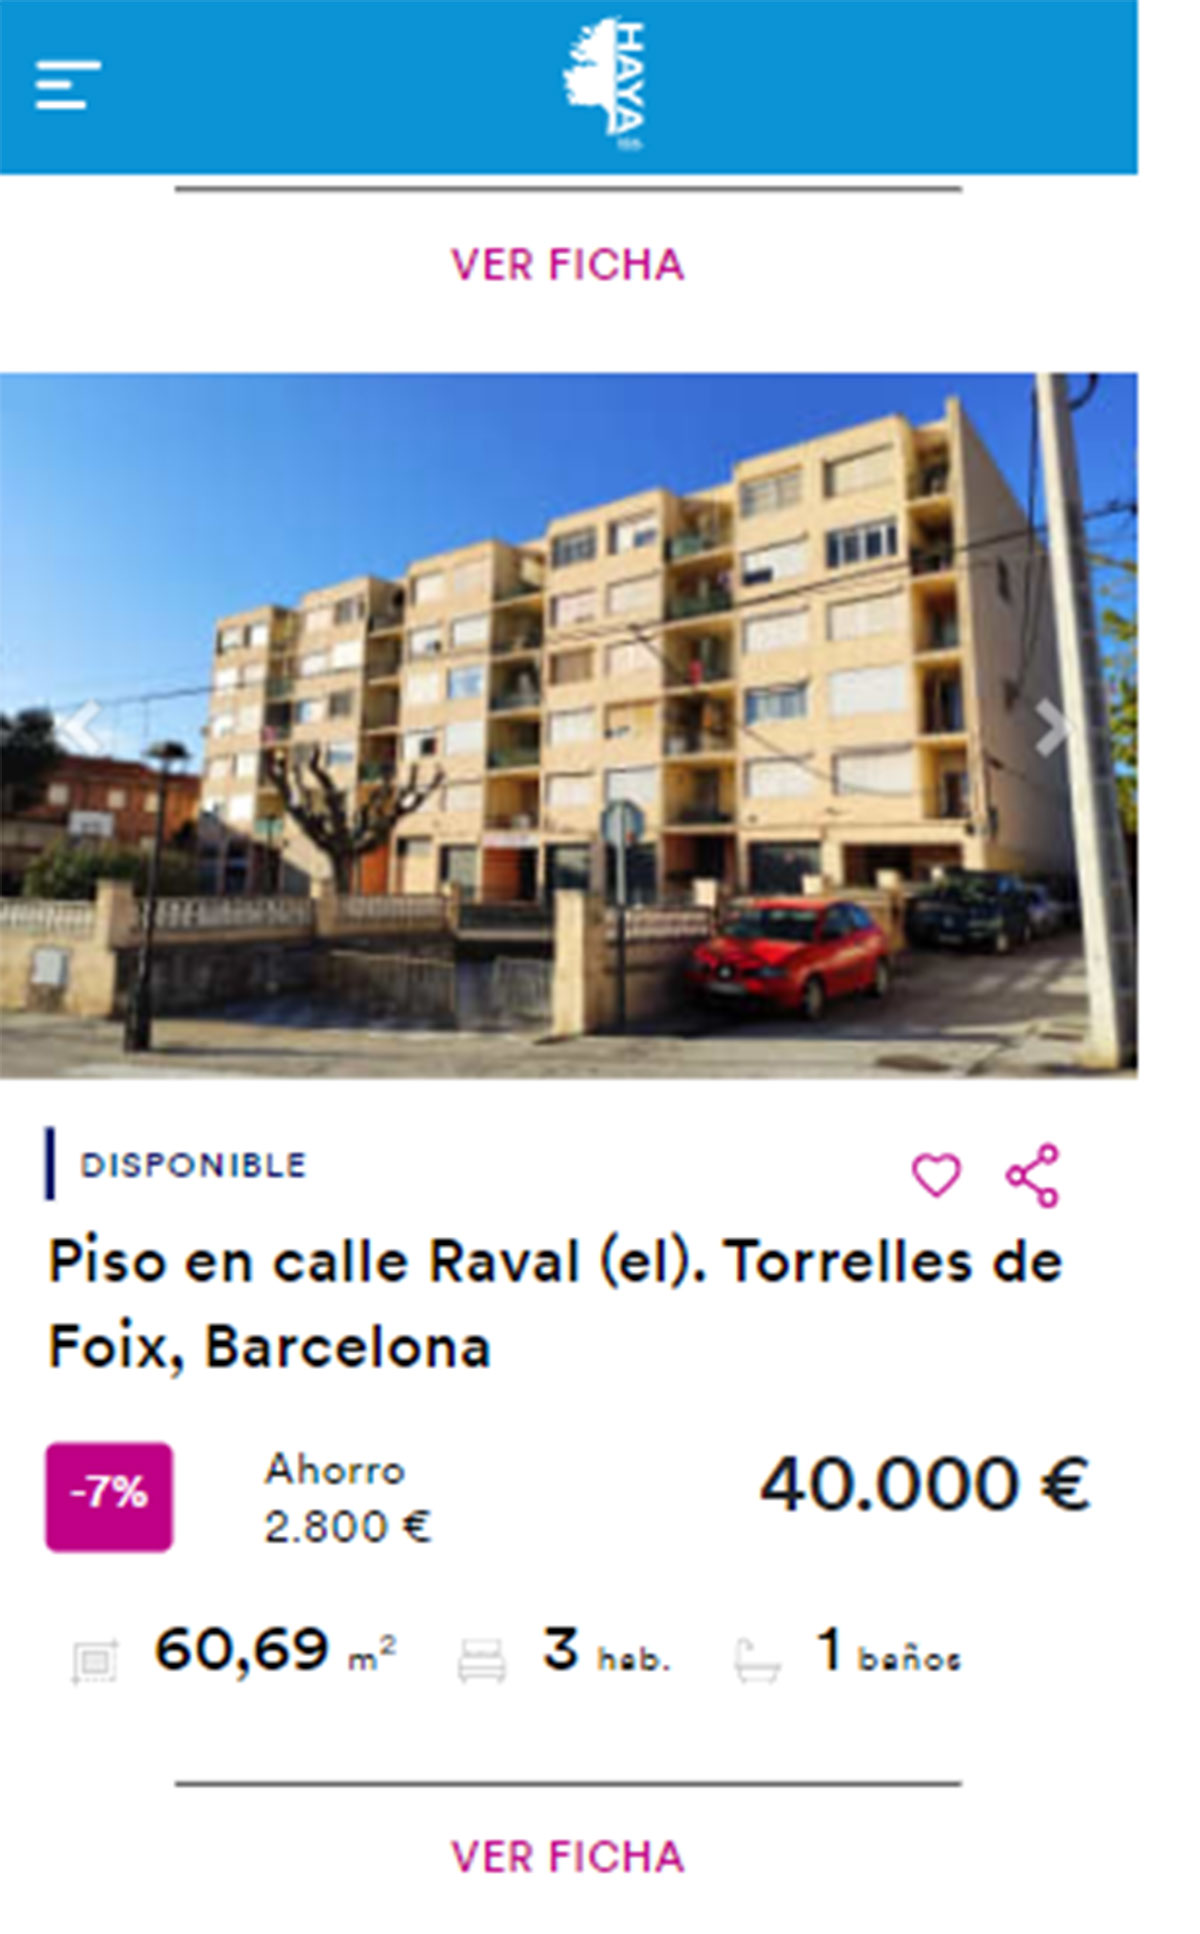 Piso en Barcelona por 40.000 euros